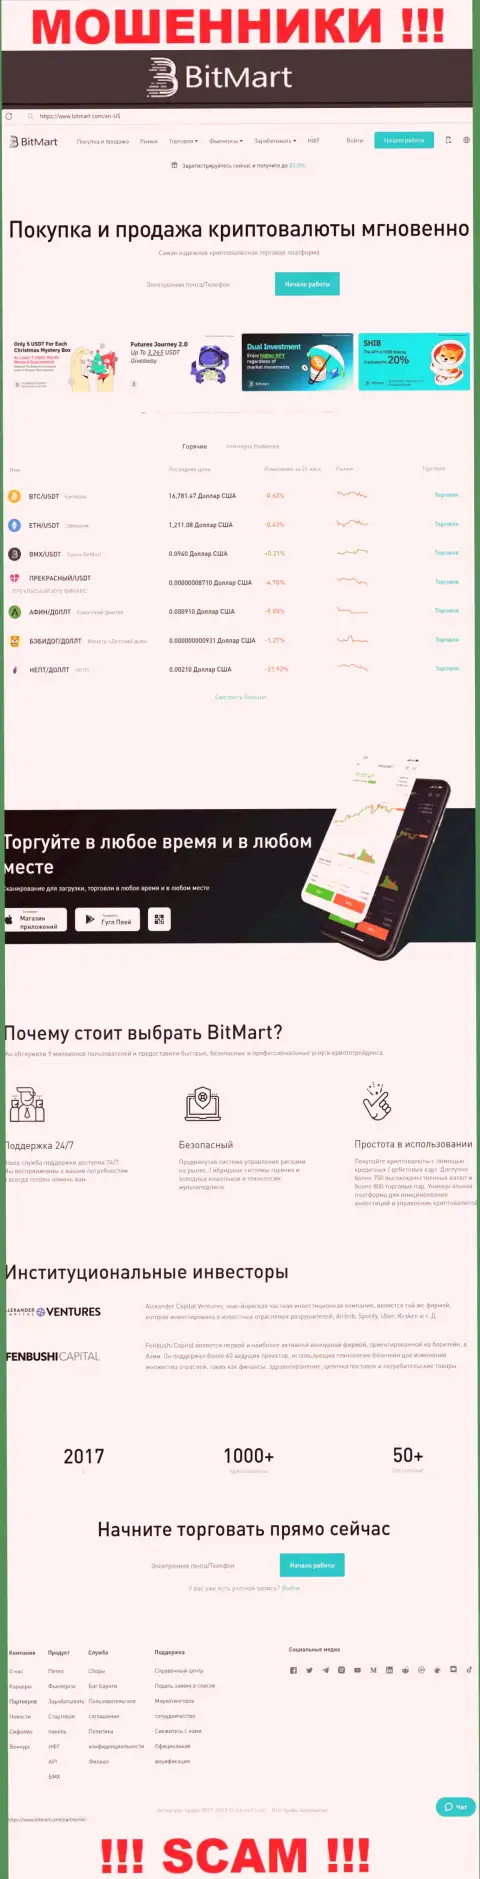 Вид официального веб-ресурса жульнической организации BitMart